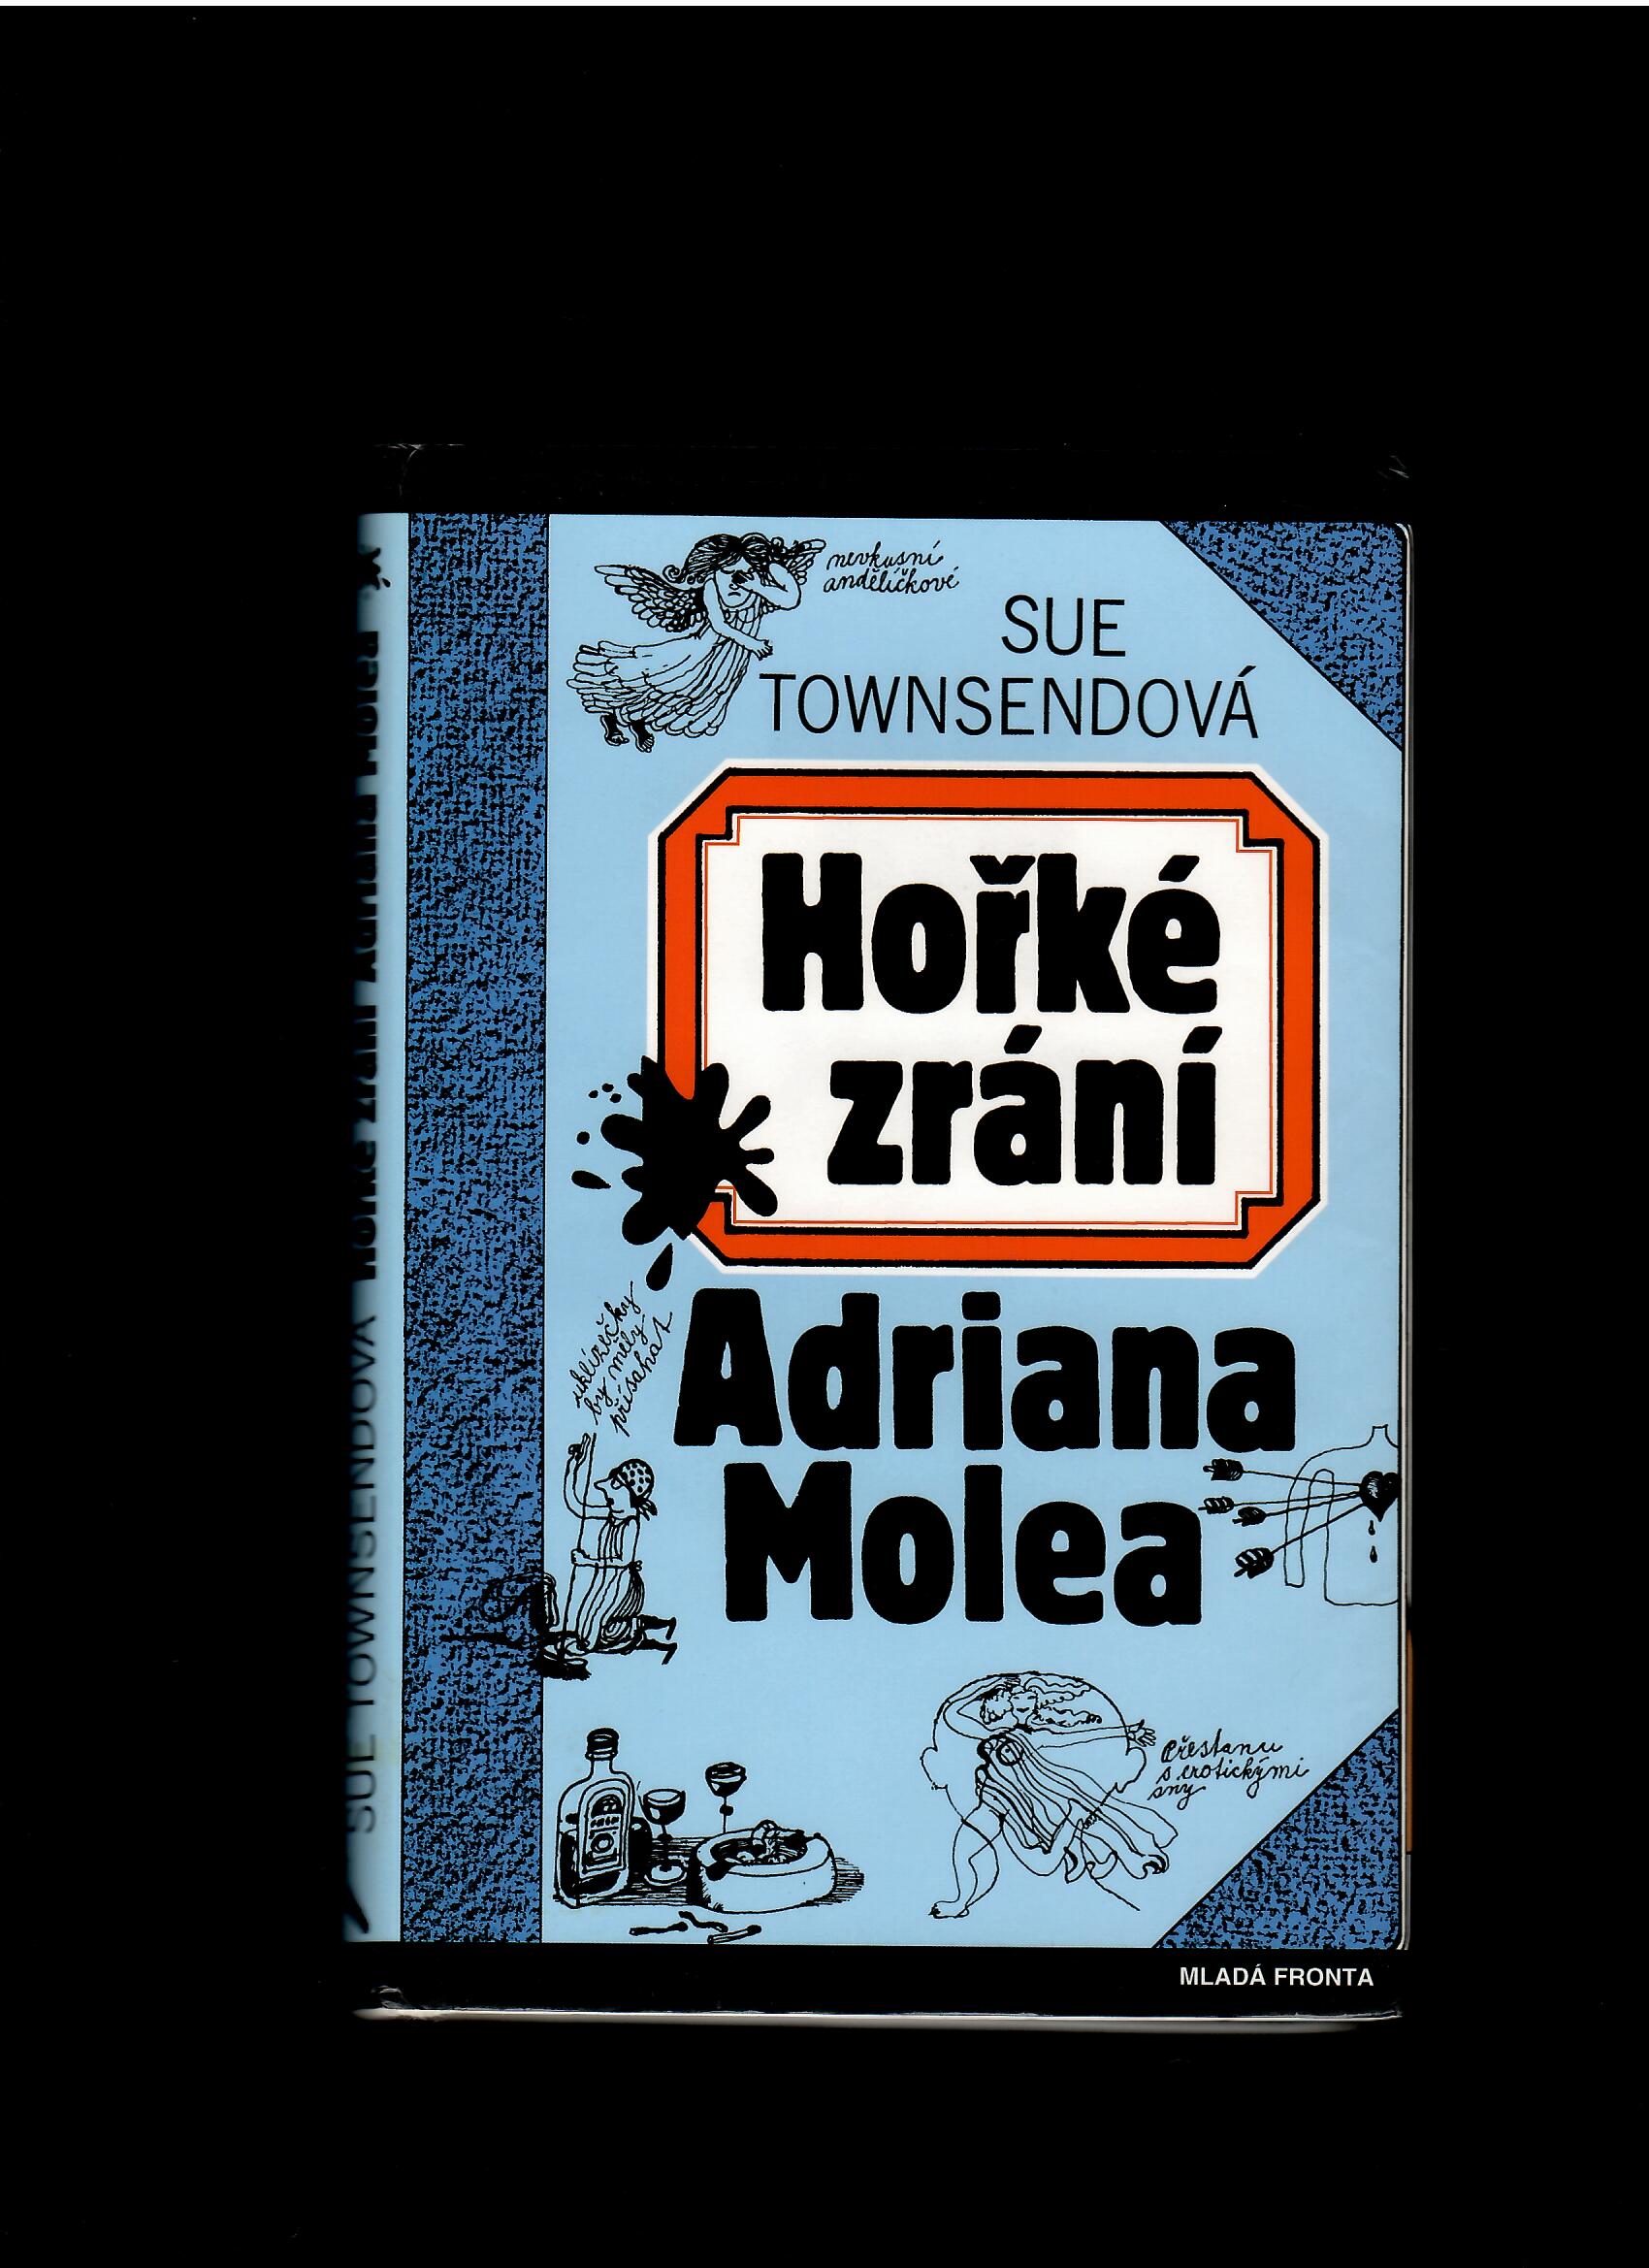 Sue Townsendová: Hořké zrání Adriana Molea